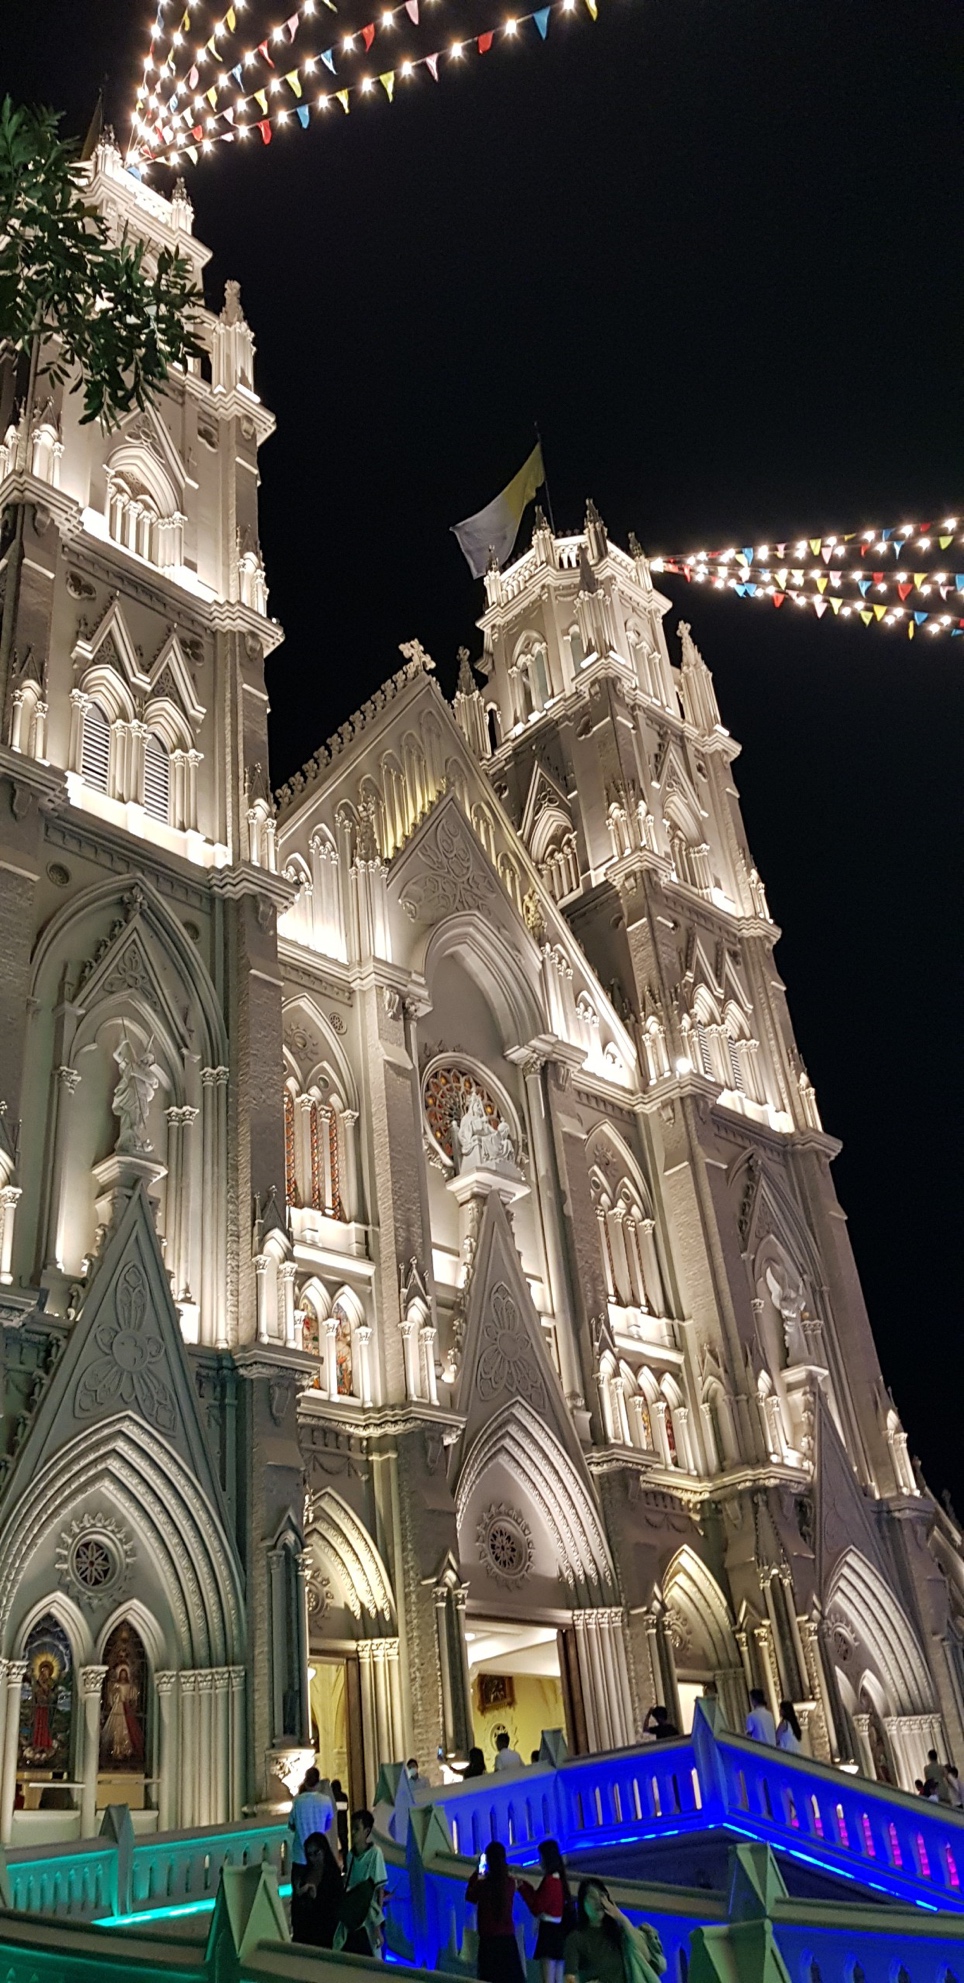 Nhà thờ kiến trúc Gothic tráng lệ ở Bà Rịa - Vũng Tàu mùa Giáng Sinh - 3